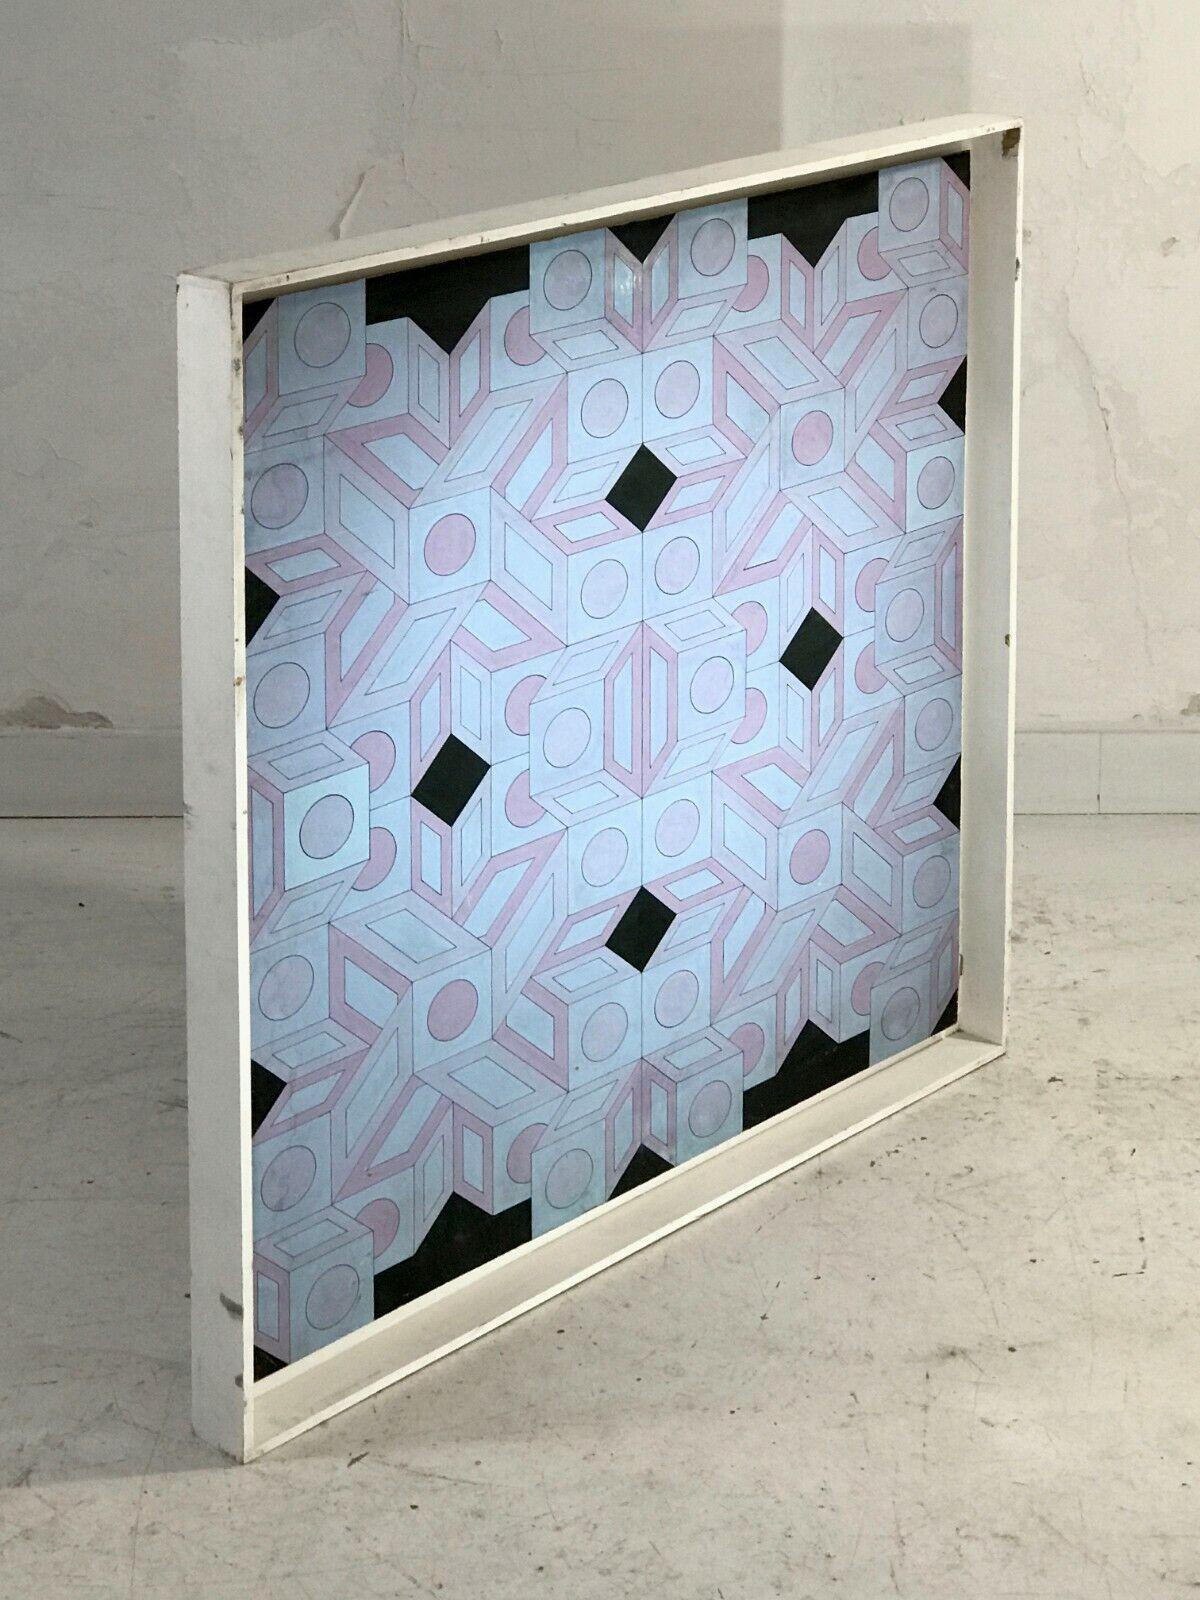 Ein Op-Art-Acrylbild auf einer Holztafel, Pop, abstrakt, Op-Art, eine Komposition geometrischer Formen in Blau, Violett und Schwarz auf einer Holztafel, die in ihrem ursprünglichen Schattenkasten (